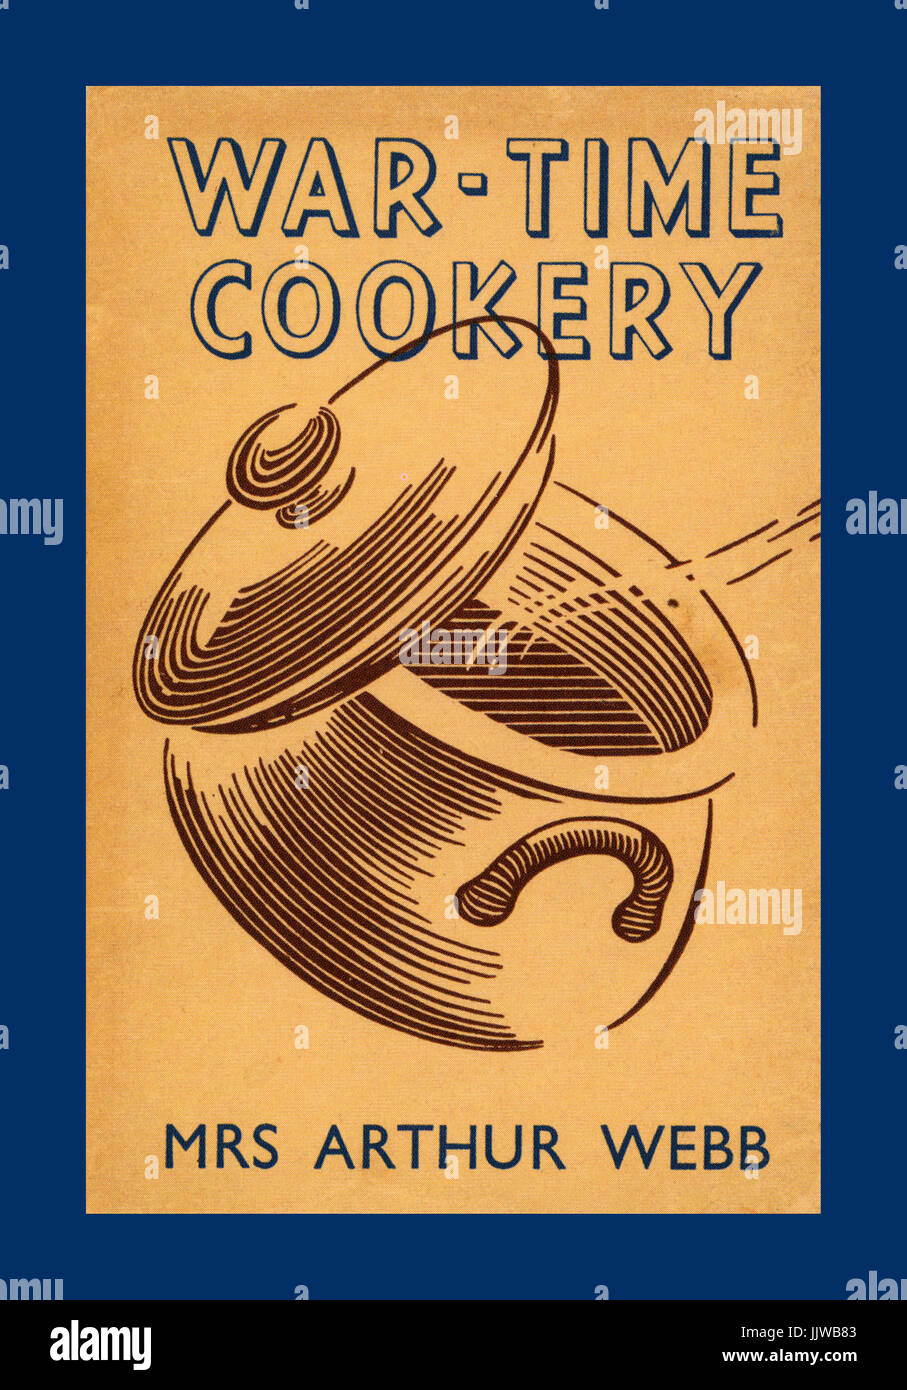 1930 / 1940 WW2 livre de 'loi' cuisine donnant des astuces et des conseils pour optimiser les ingrédients alimentaires disponibles au cours de la guerre de rationnement alimentaire Banque D'Images